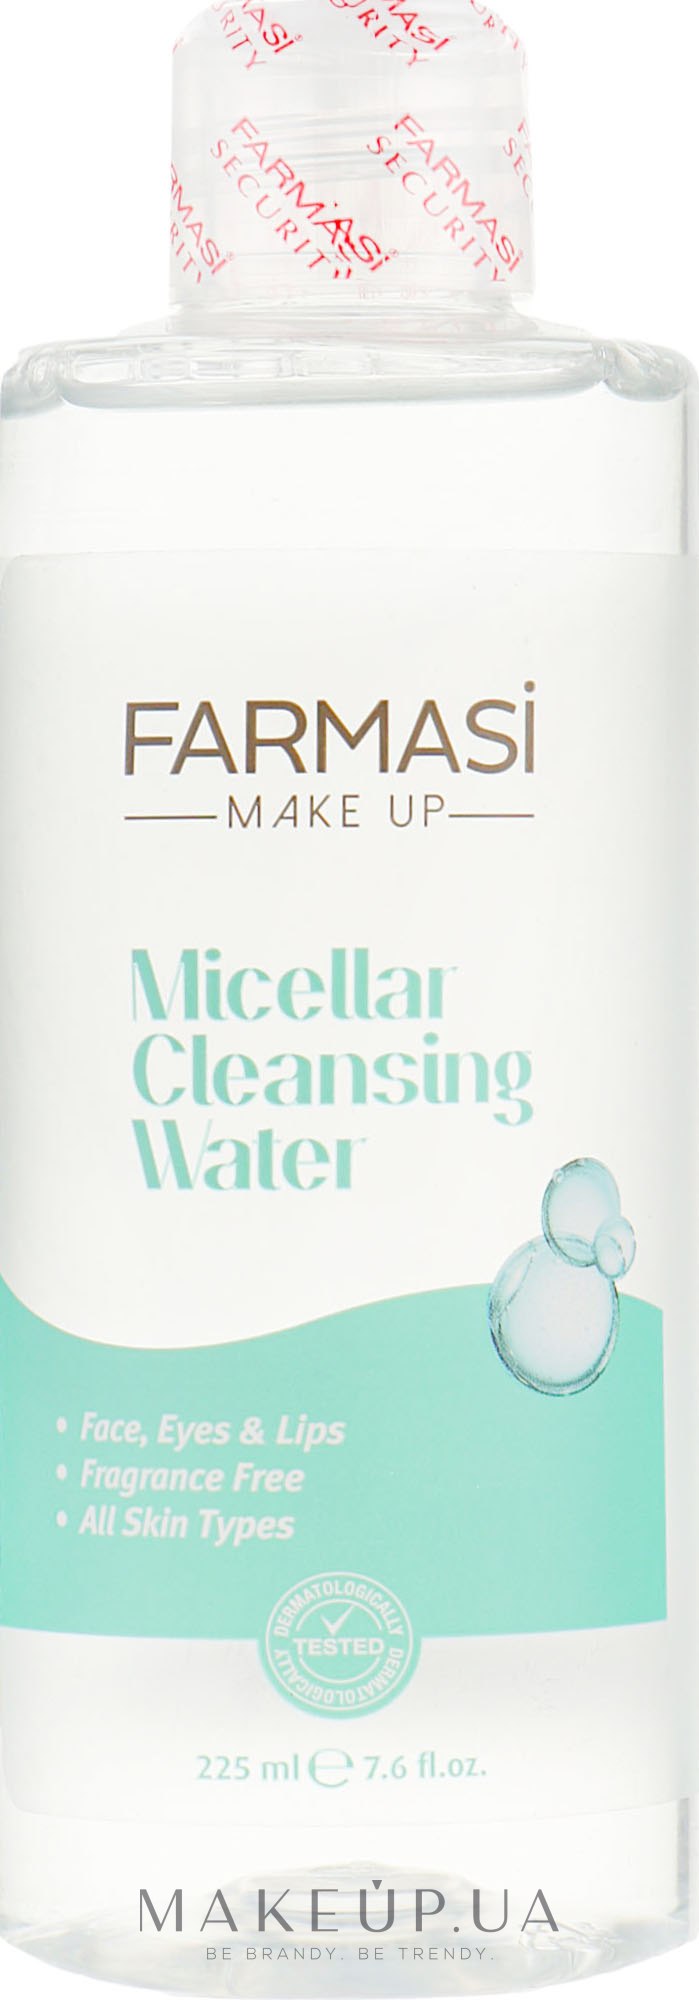 Міцелярна очищувальна вода для обличчя - Farmasi Micellar Cleansing Water — фото 225ml